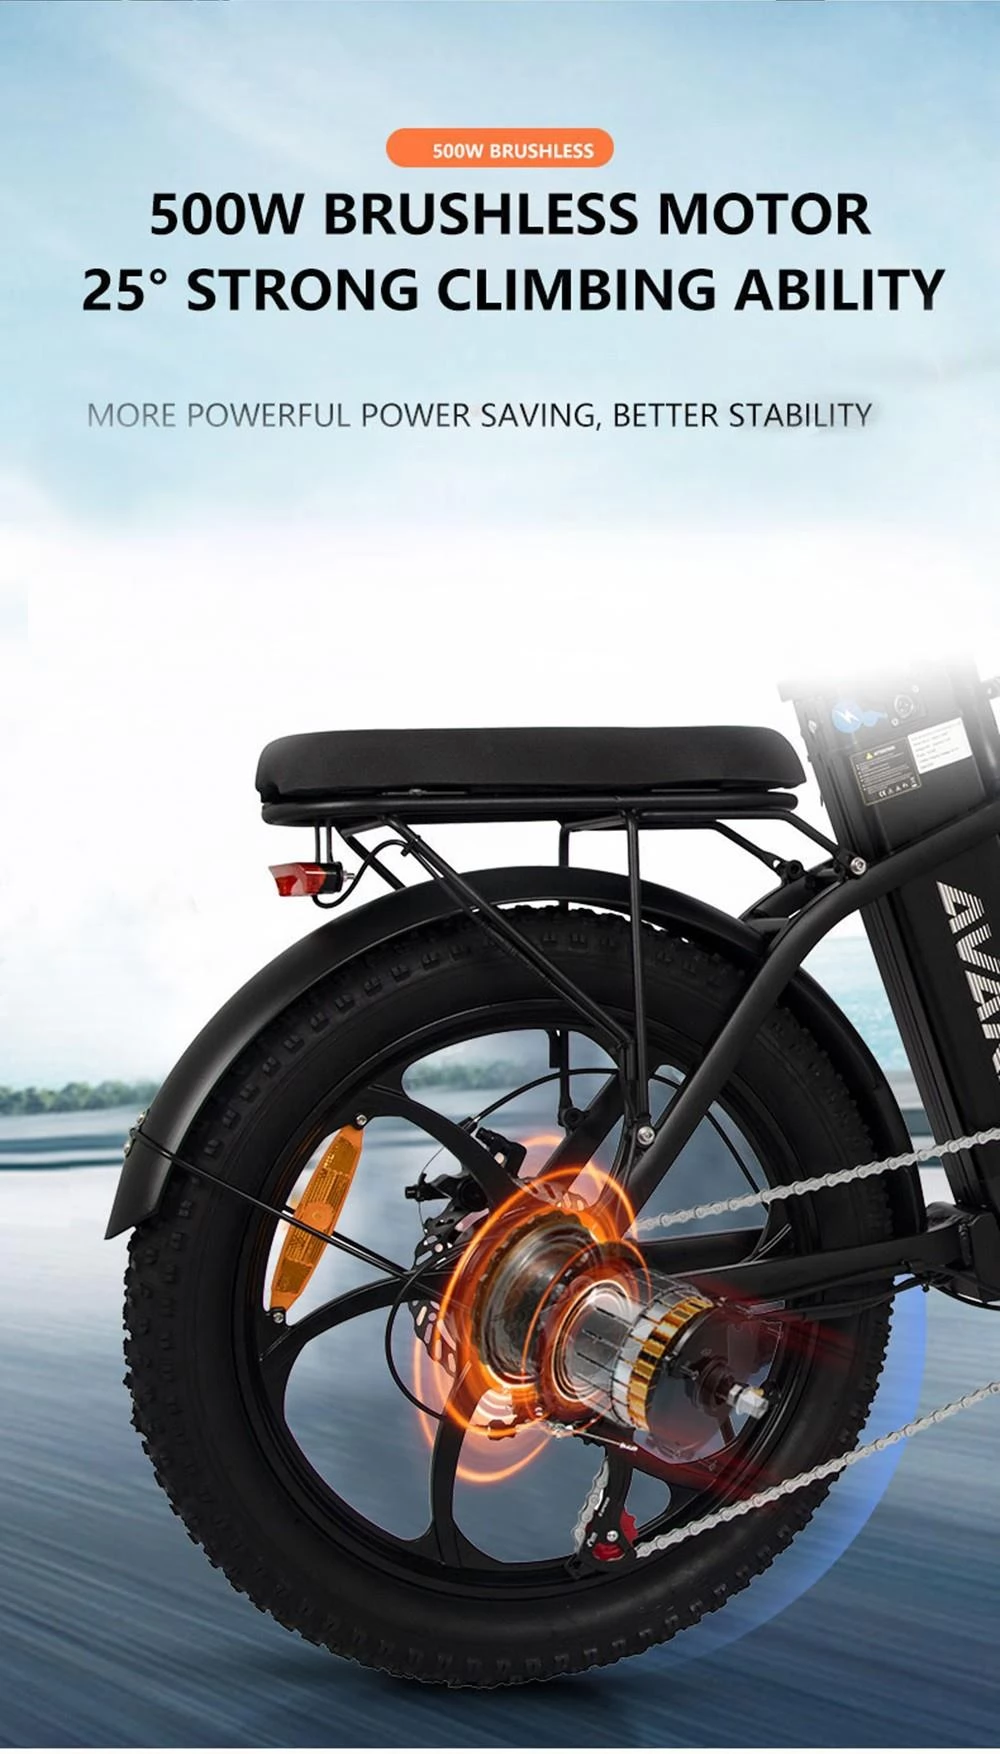 AVAKA BZ20 PLUS 20*3 Inch één wiel opvouwbare elektrische fiets - 500W borstelloze motor & 48V 15Ah batterij